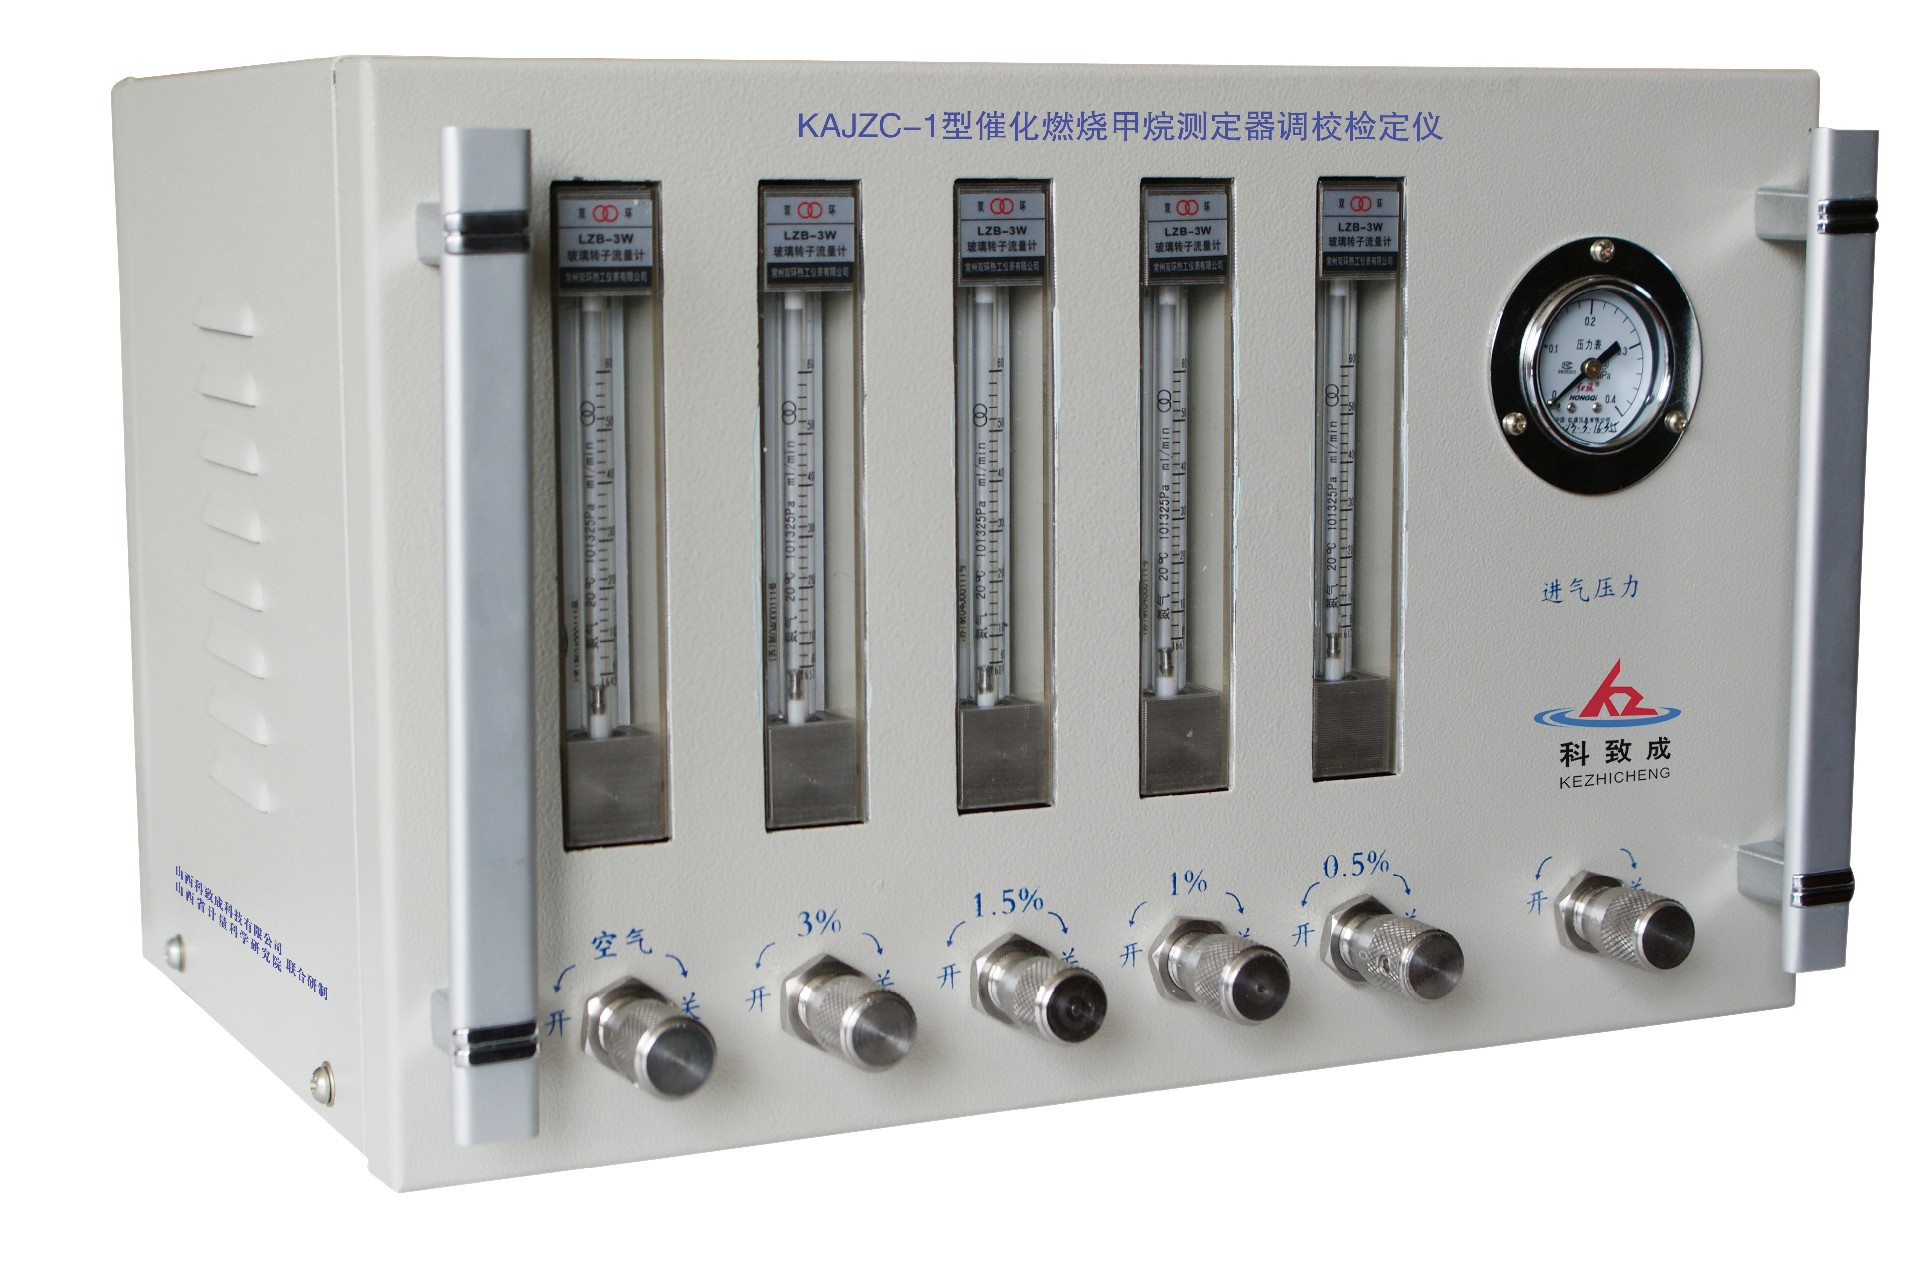 郑州KAJZC-1型催化燃烧甲烷测定器调校检定仪